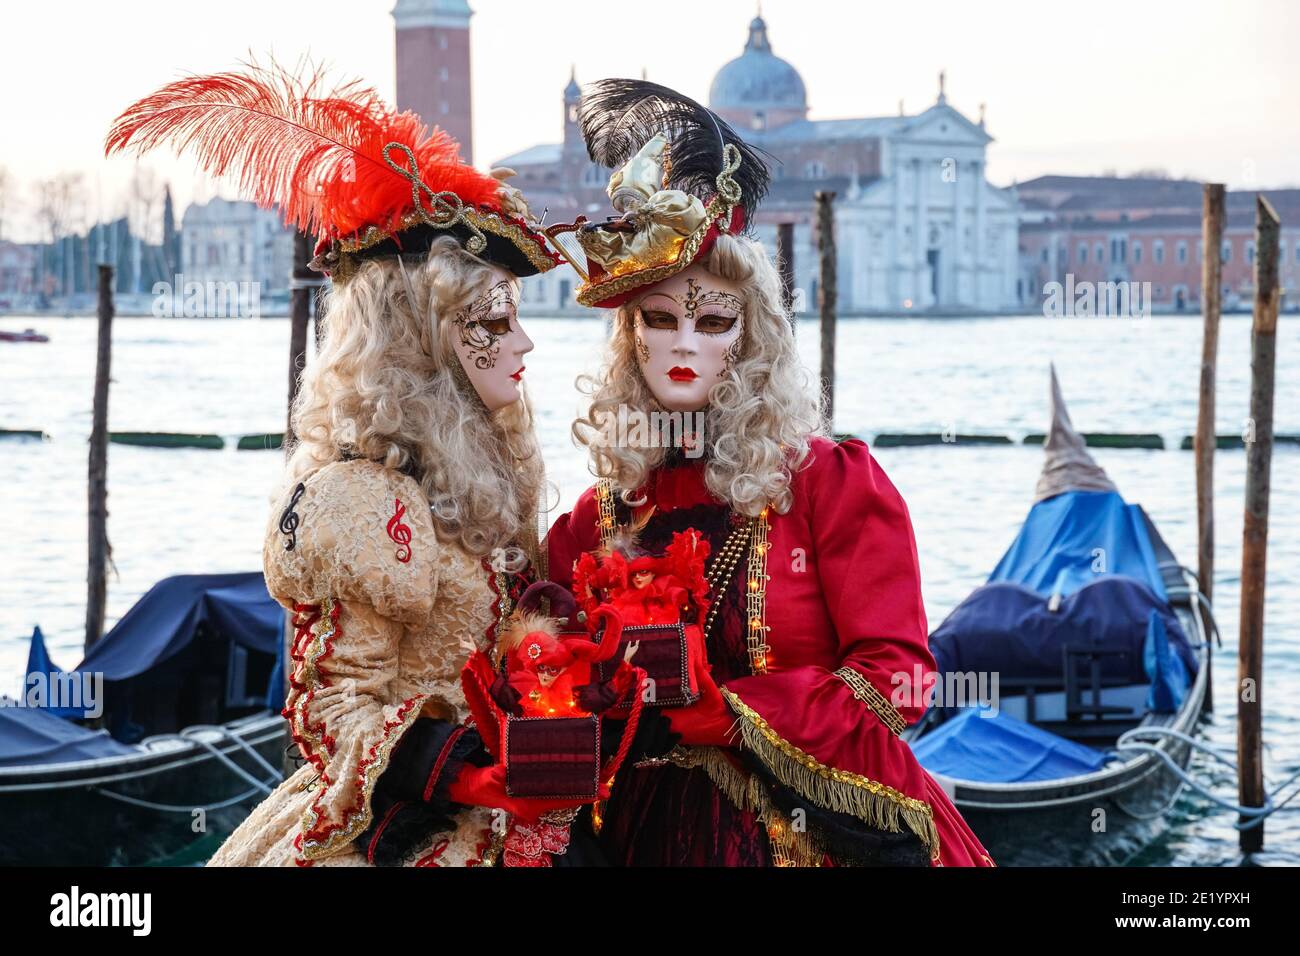 Zwei Frauen in traditionell dekorierten Kostümen und bemalten Masken während des Karnevals in Venedig mit dem Kloster San Giorgio hinter Venedig, Italien Stockfoto